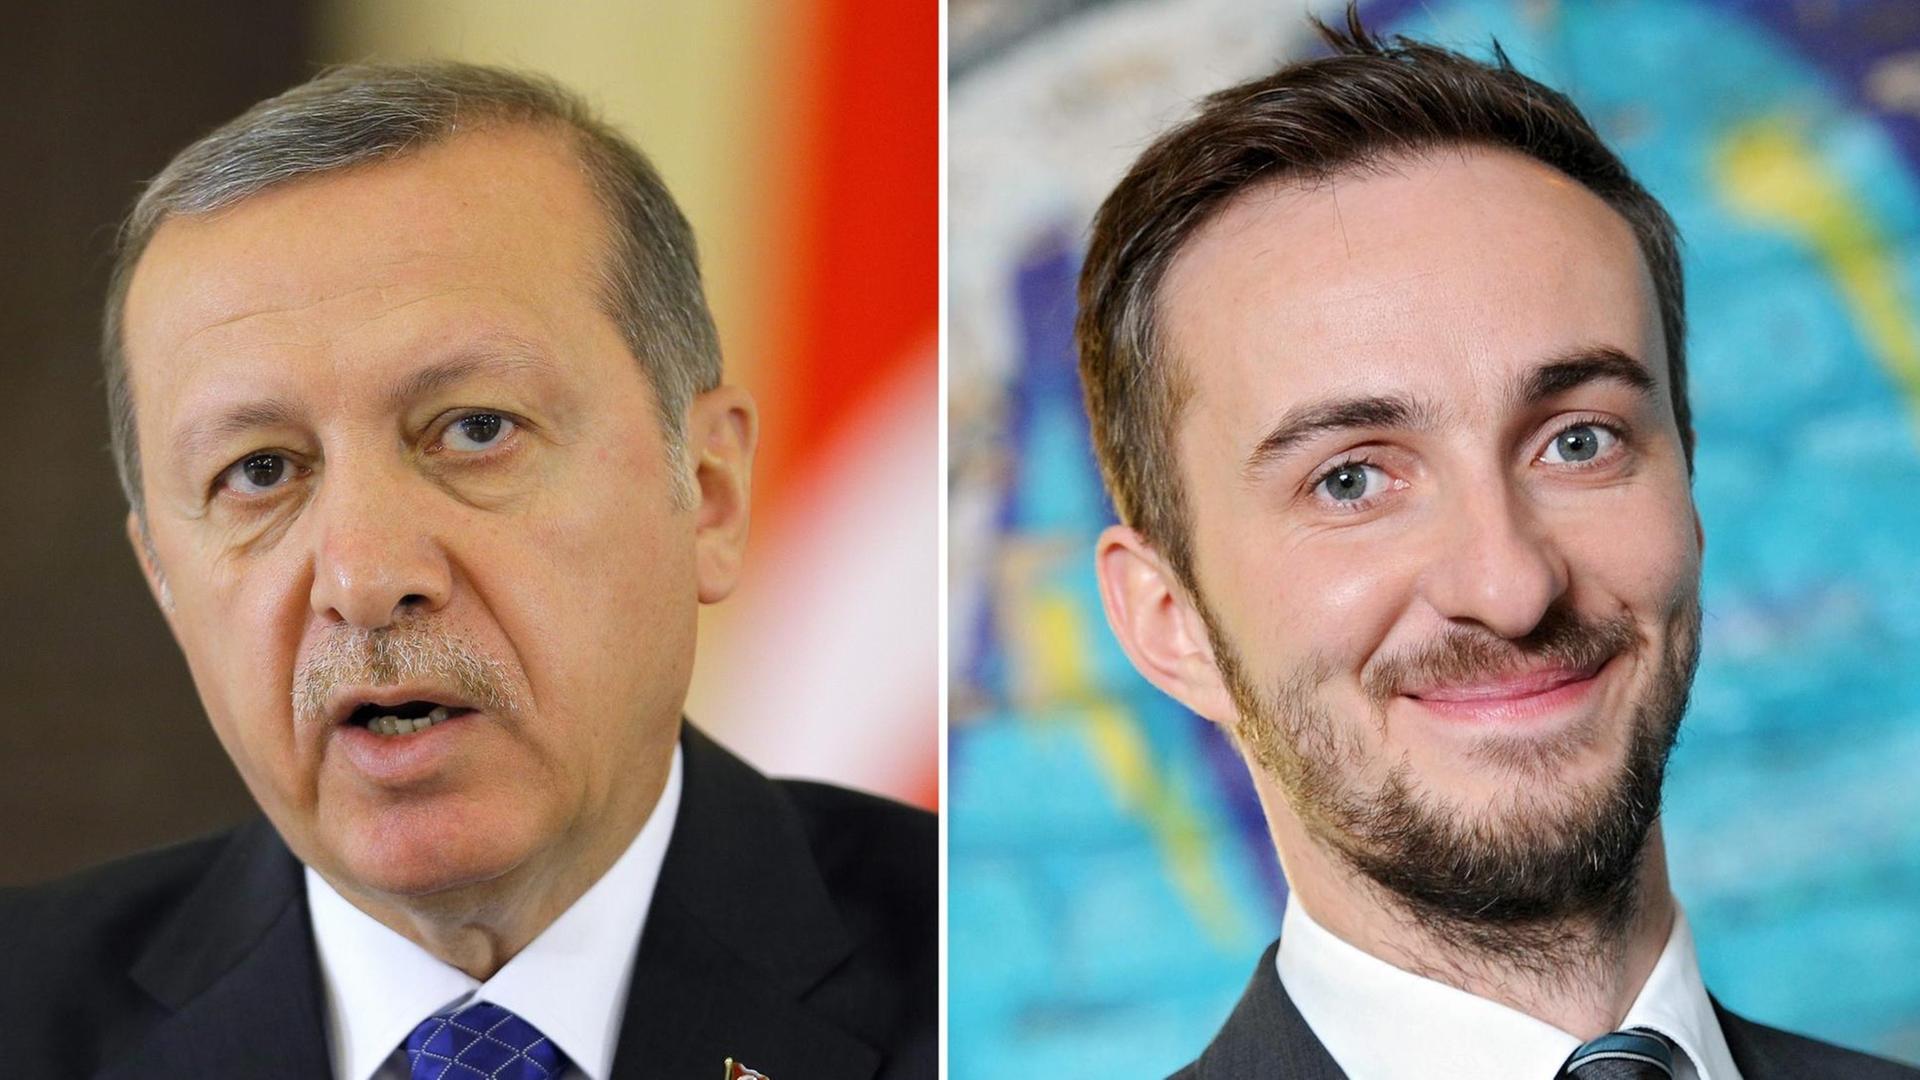 Der türkische Präsident Recep Tayyip Erdogan und ZDF-Moderator Jan Böhmermann in verschiedenen Aufnahmen nebeneinander.